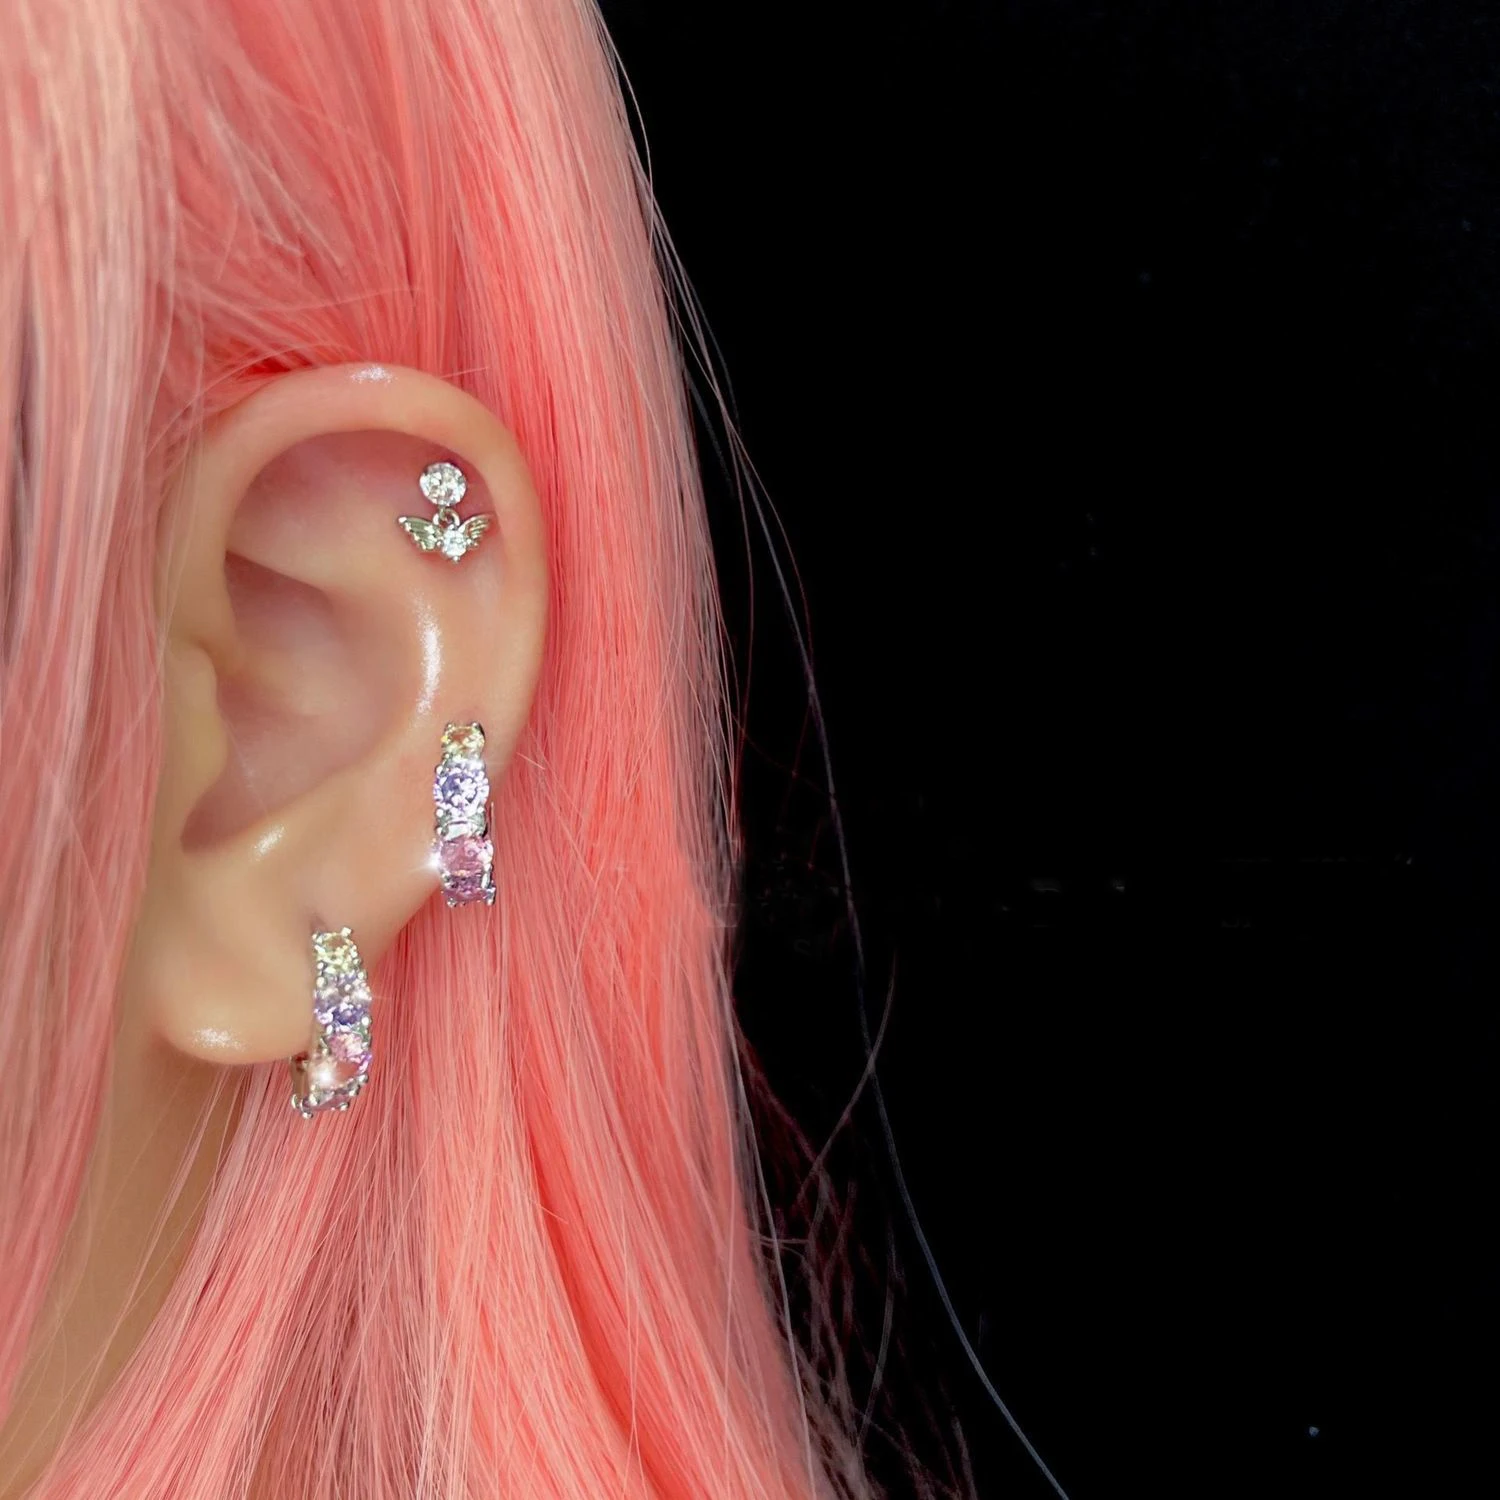 

Cool Purple Pink Zirconia Small Hoop Earrings for Women Girls Sweet Wing Angel Piercing Cartilage Stud Earrings Party Jewelry Gi